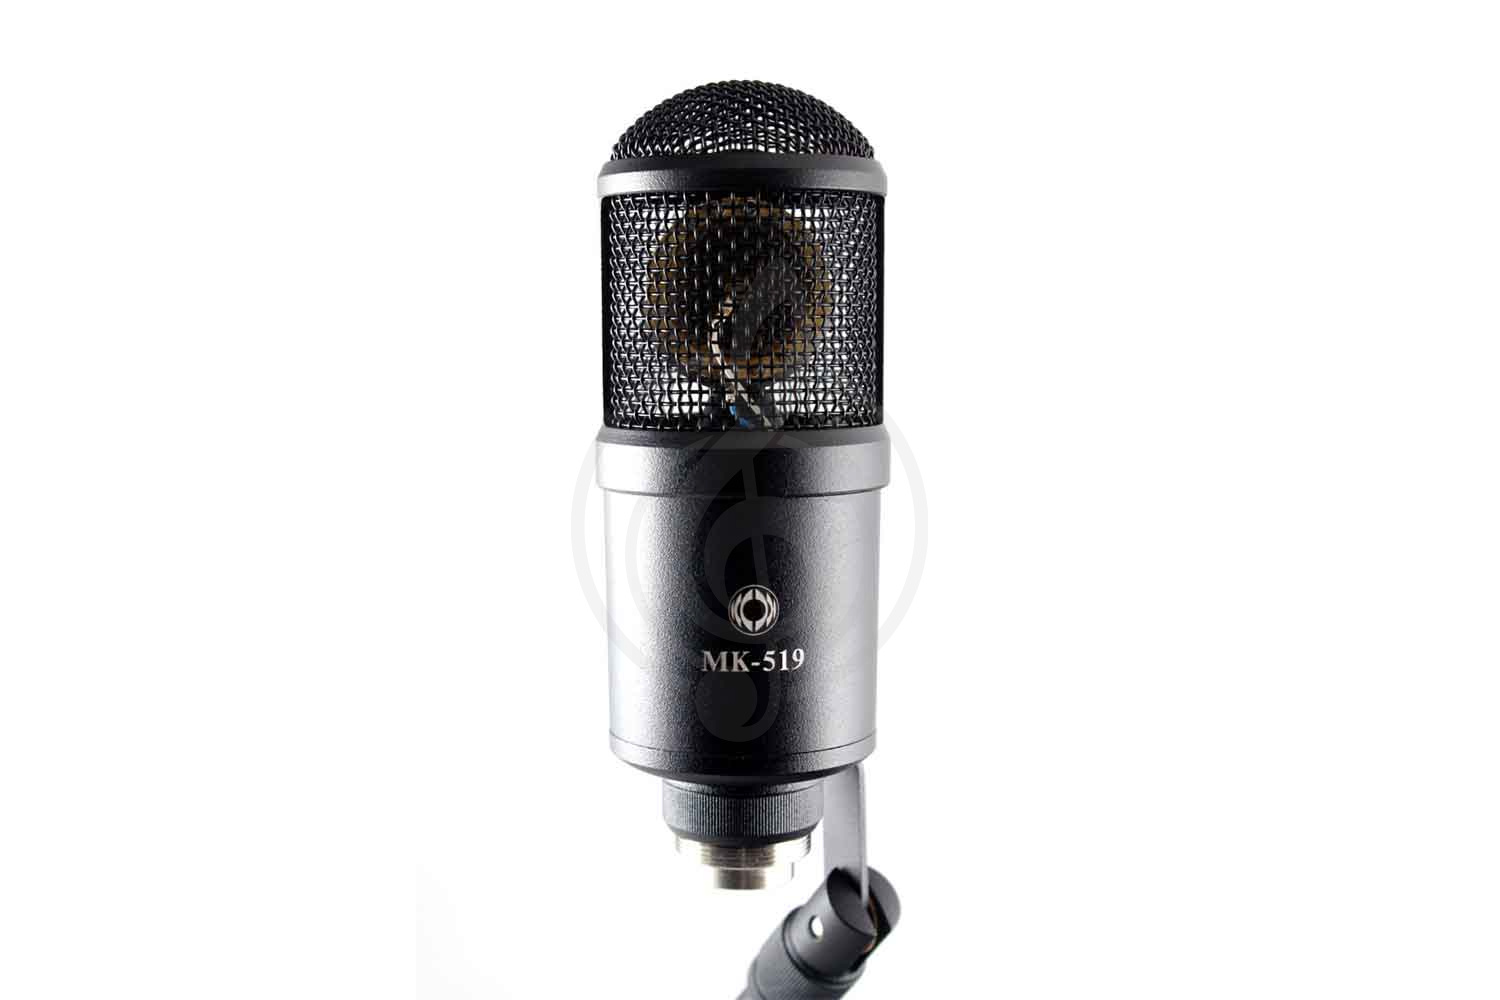 Конденсаторный студийный микрофон Конденсаторные студийные микрофоны Октава Октава МК-519-b - студийный конденсаторный микрофон МК-519-b - фото 1